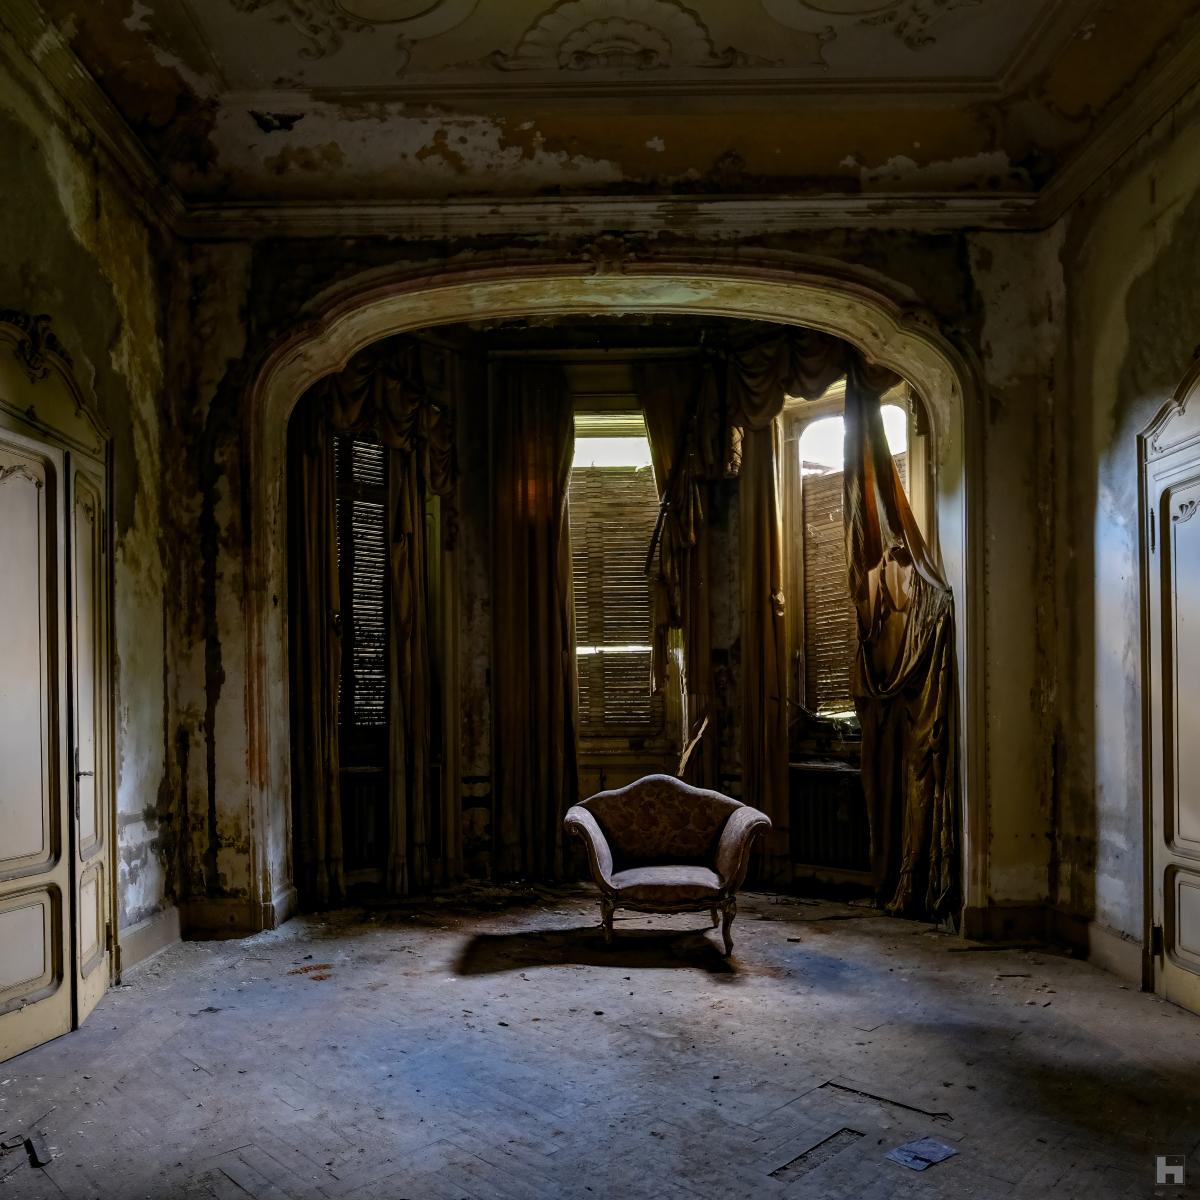 Photographie d'une villa italienne abandonnée.Fauteuil oublié